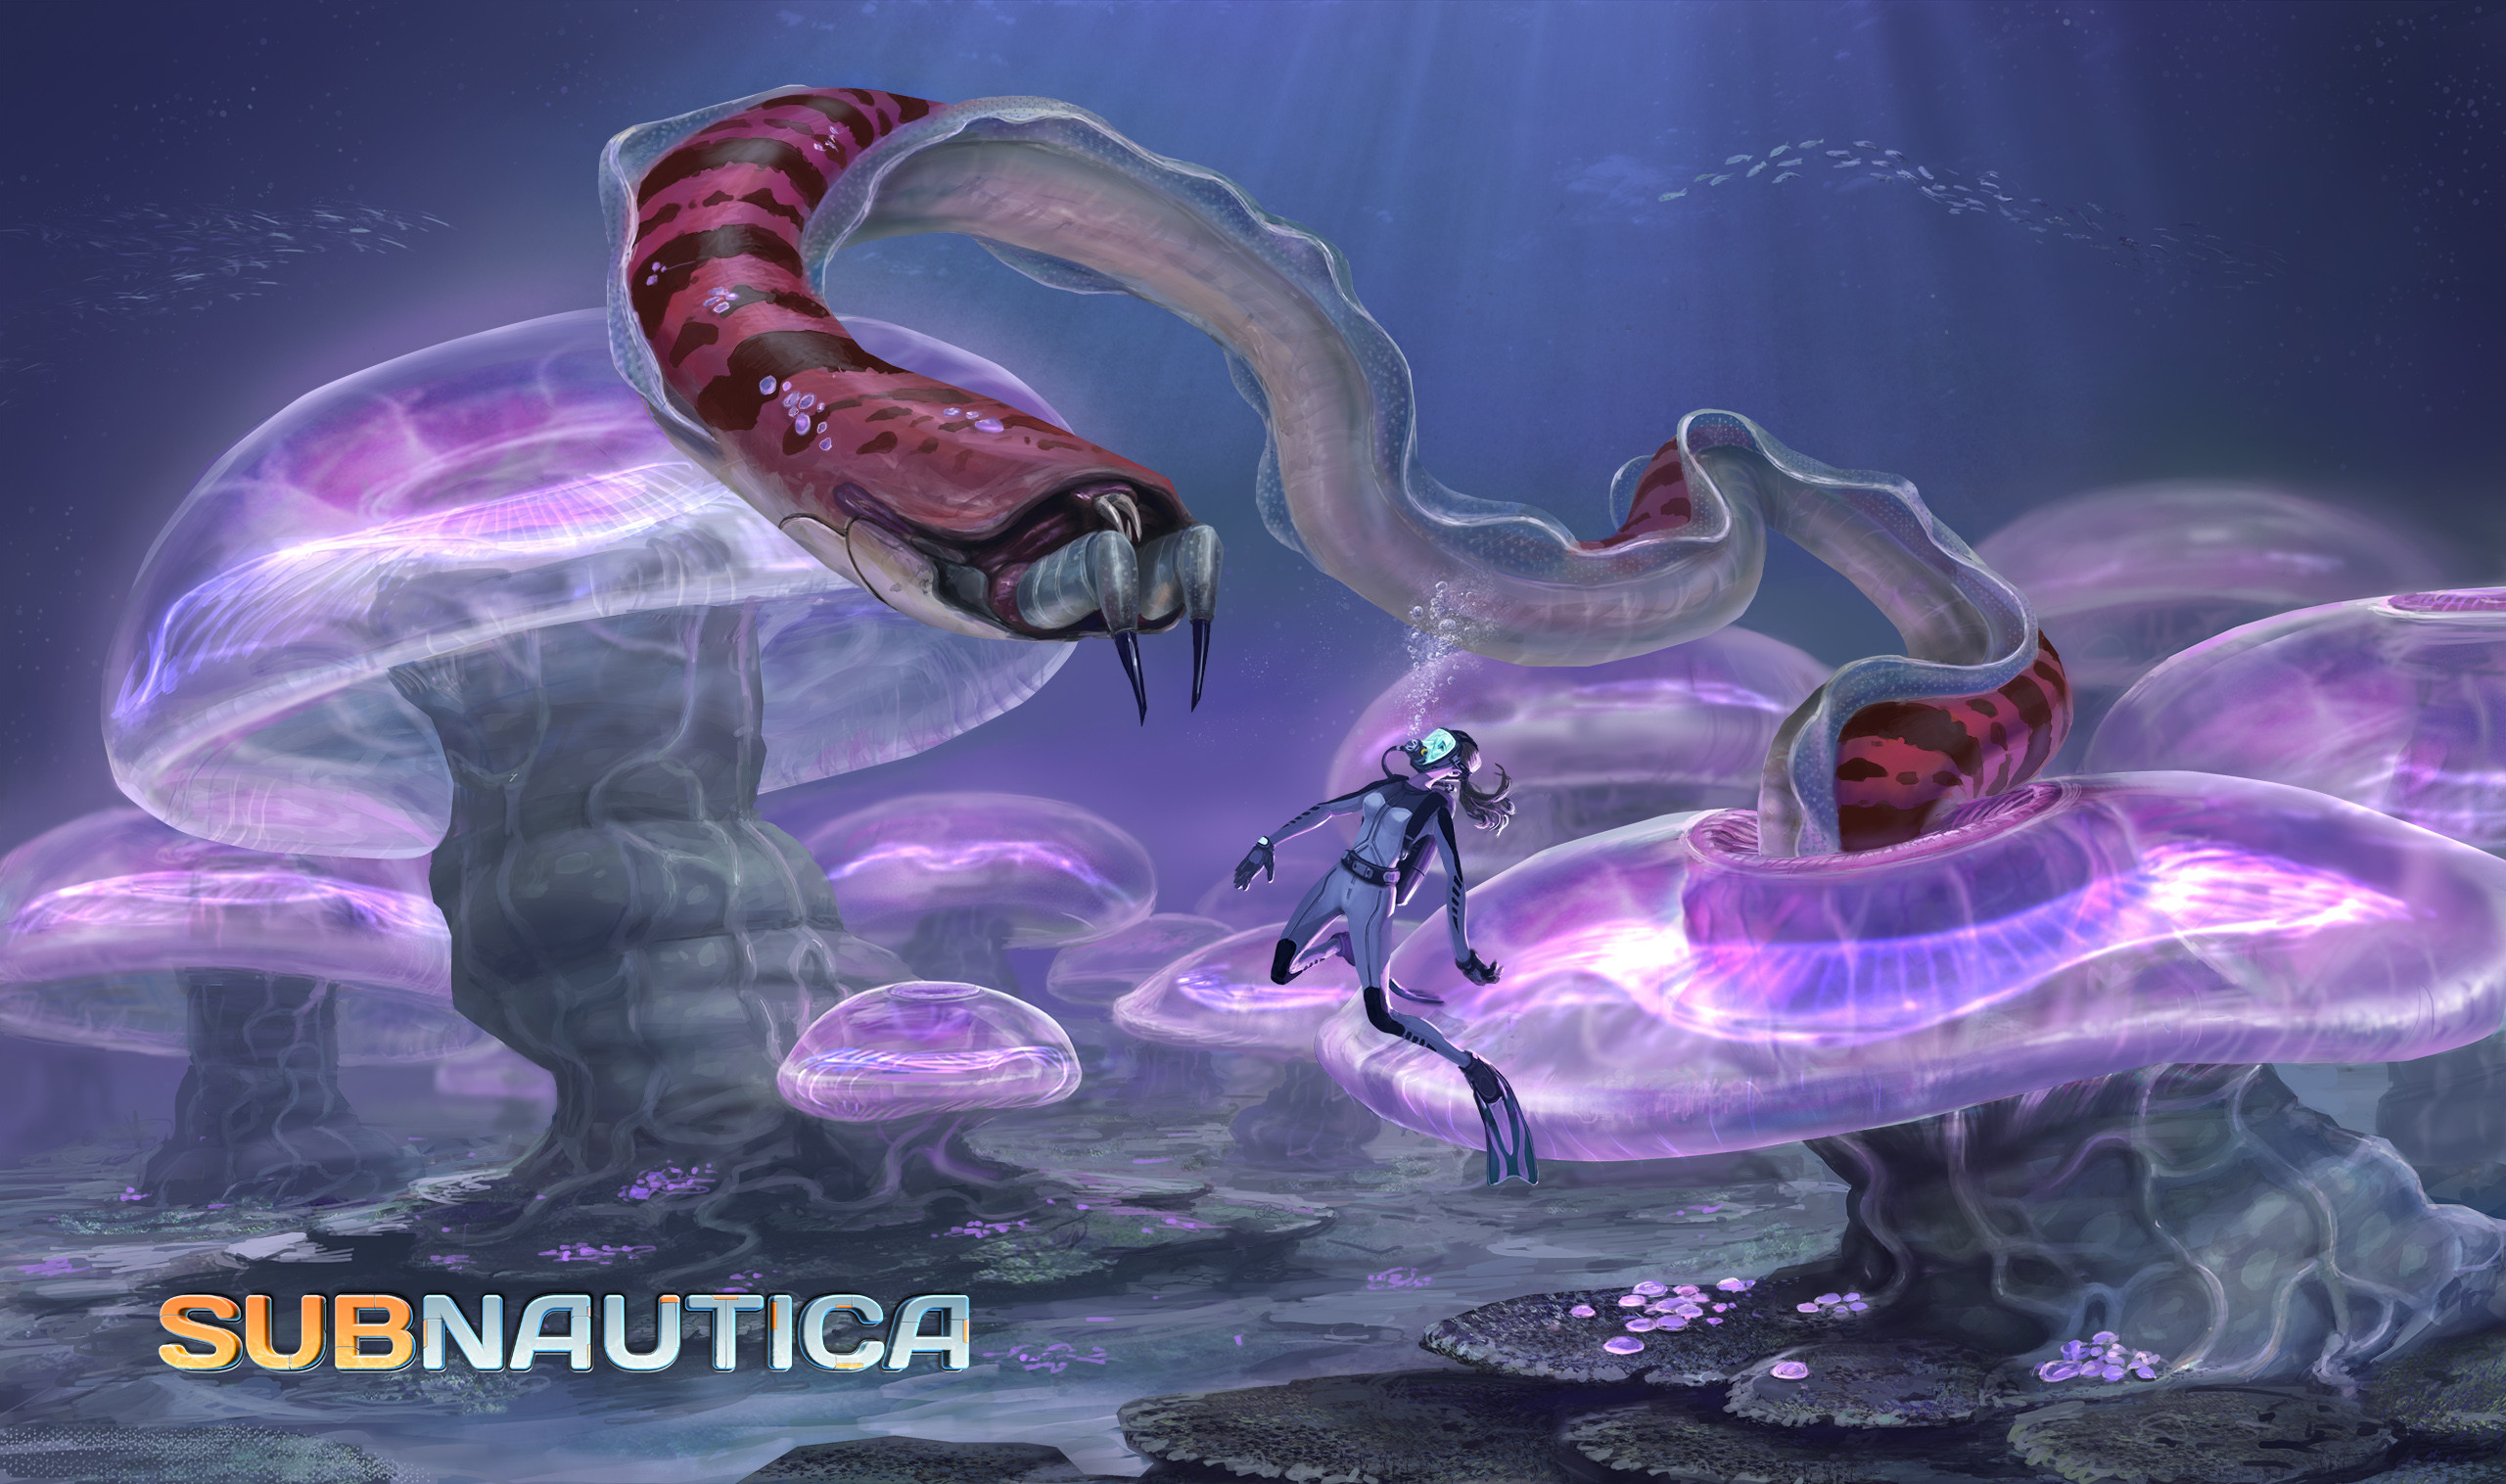 General 2560x1516 video games subnautica PC gaming creature underwater divers